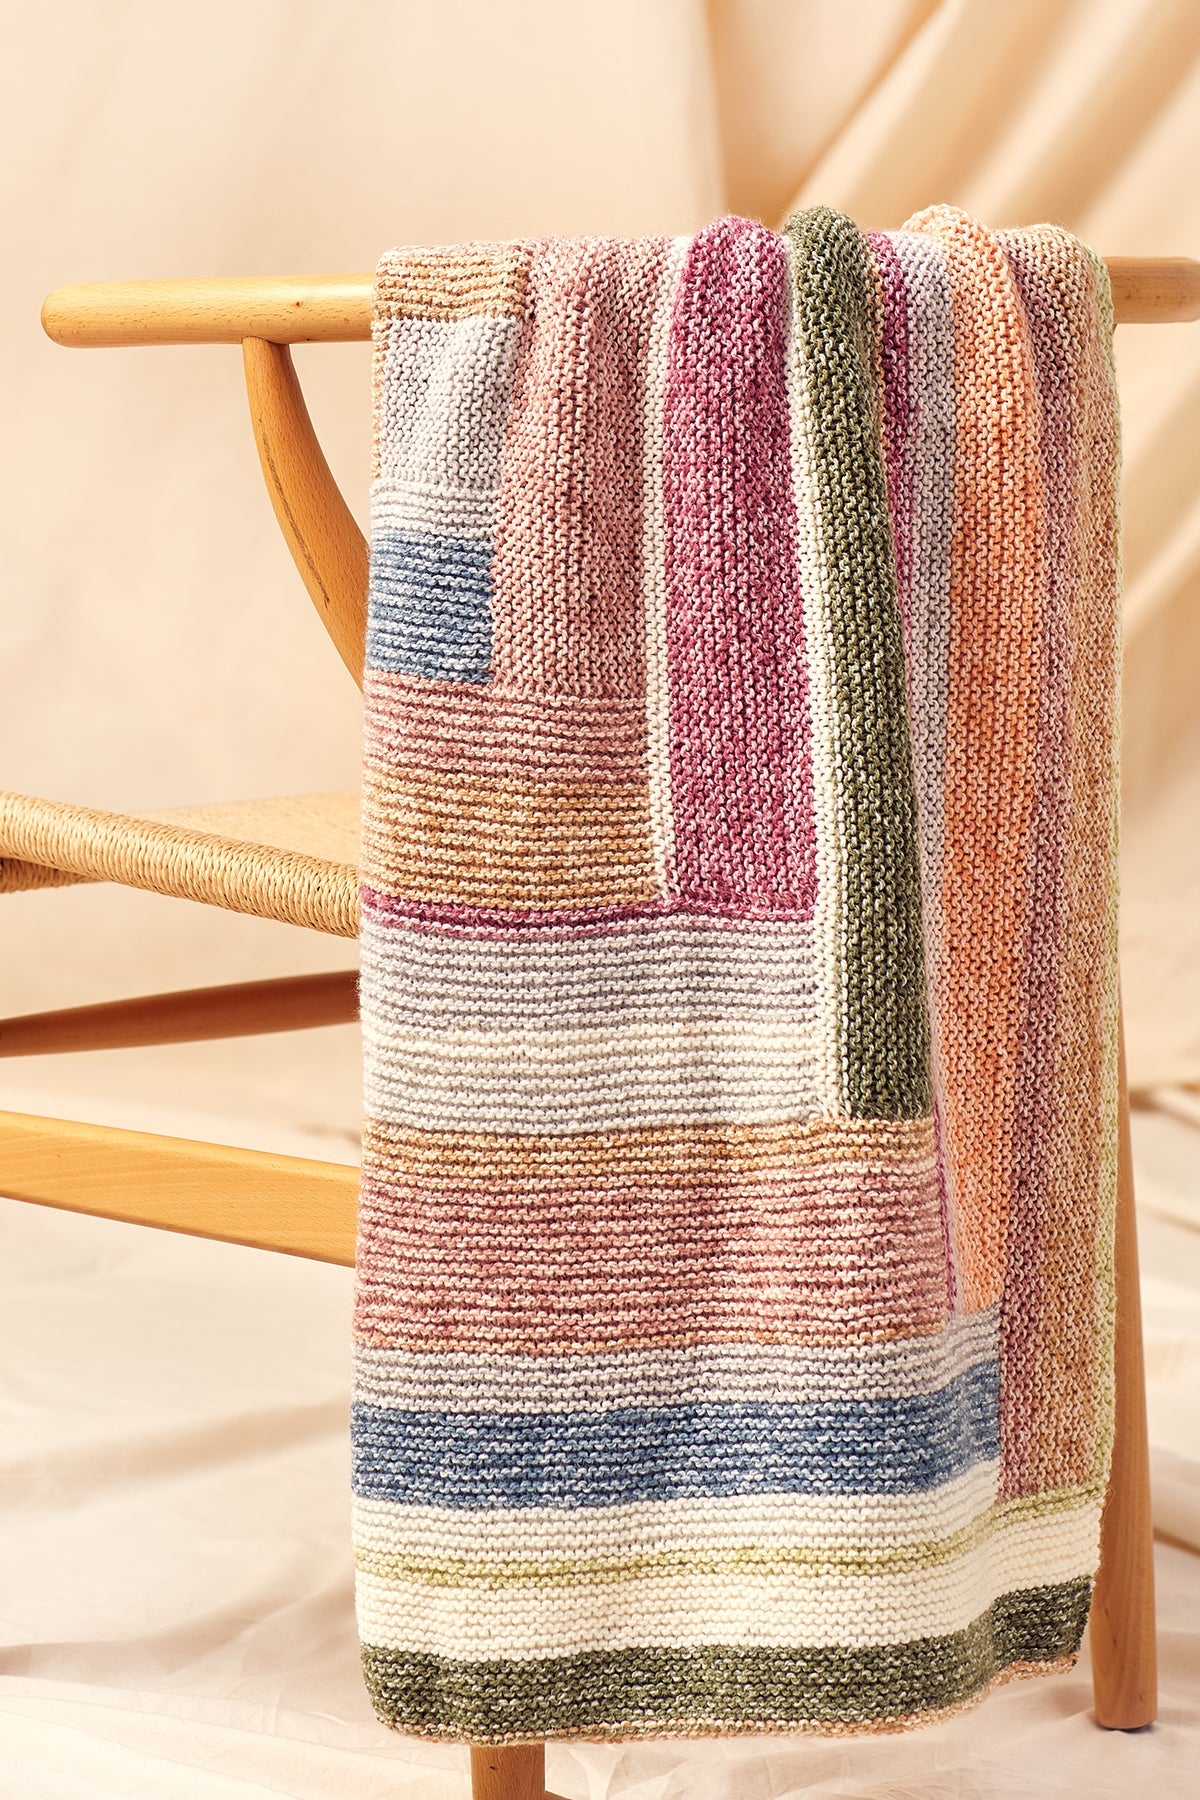 Log Cabin Blanket Crochet Kit